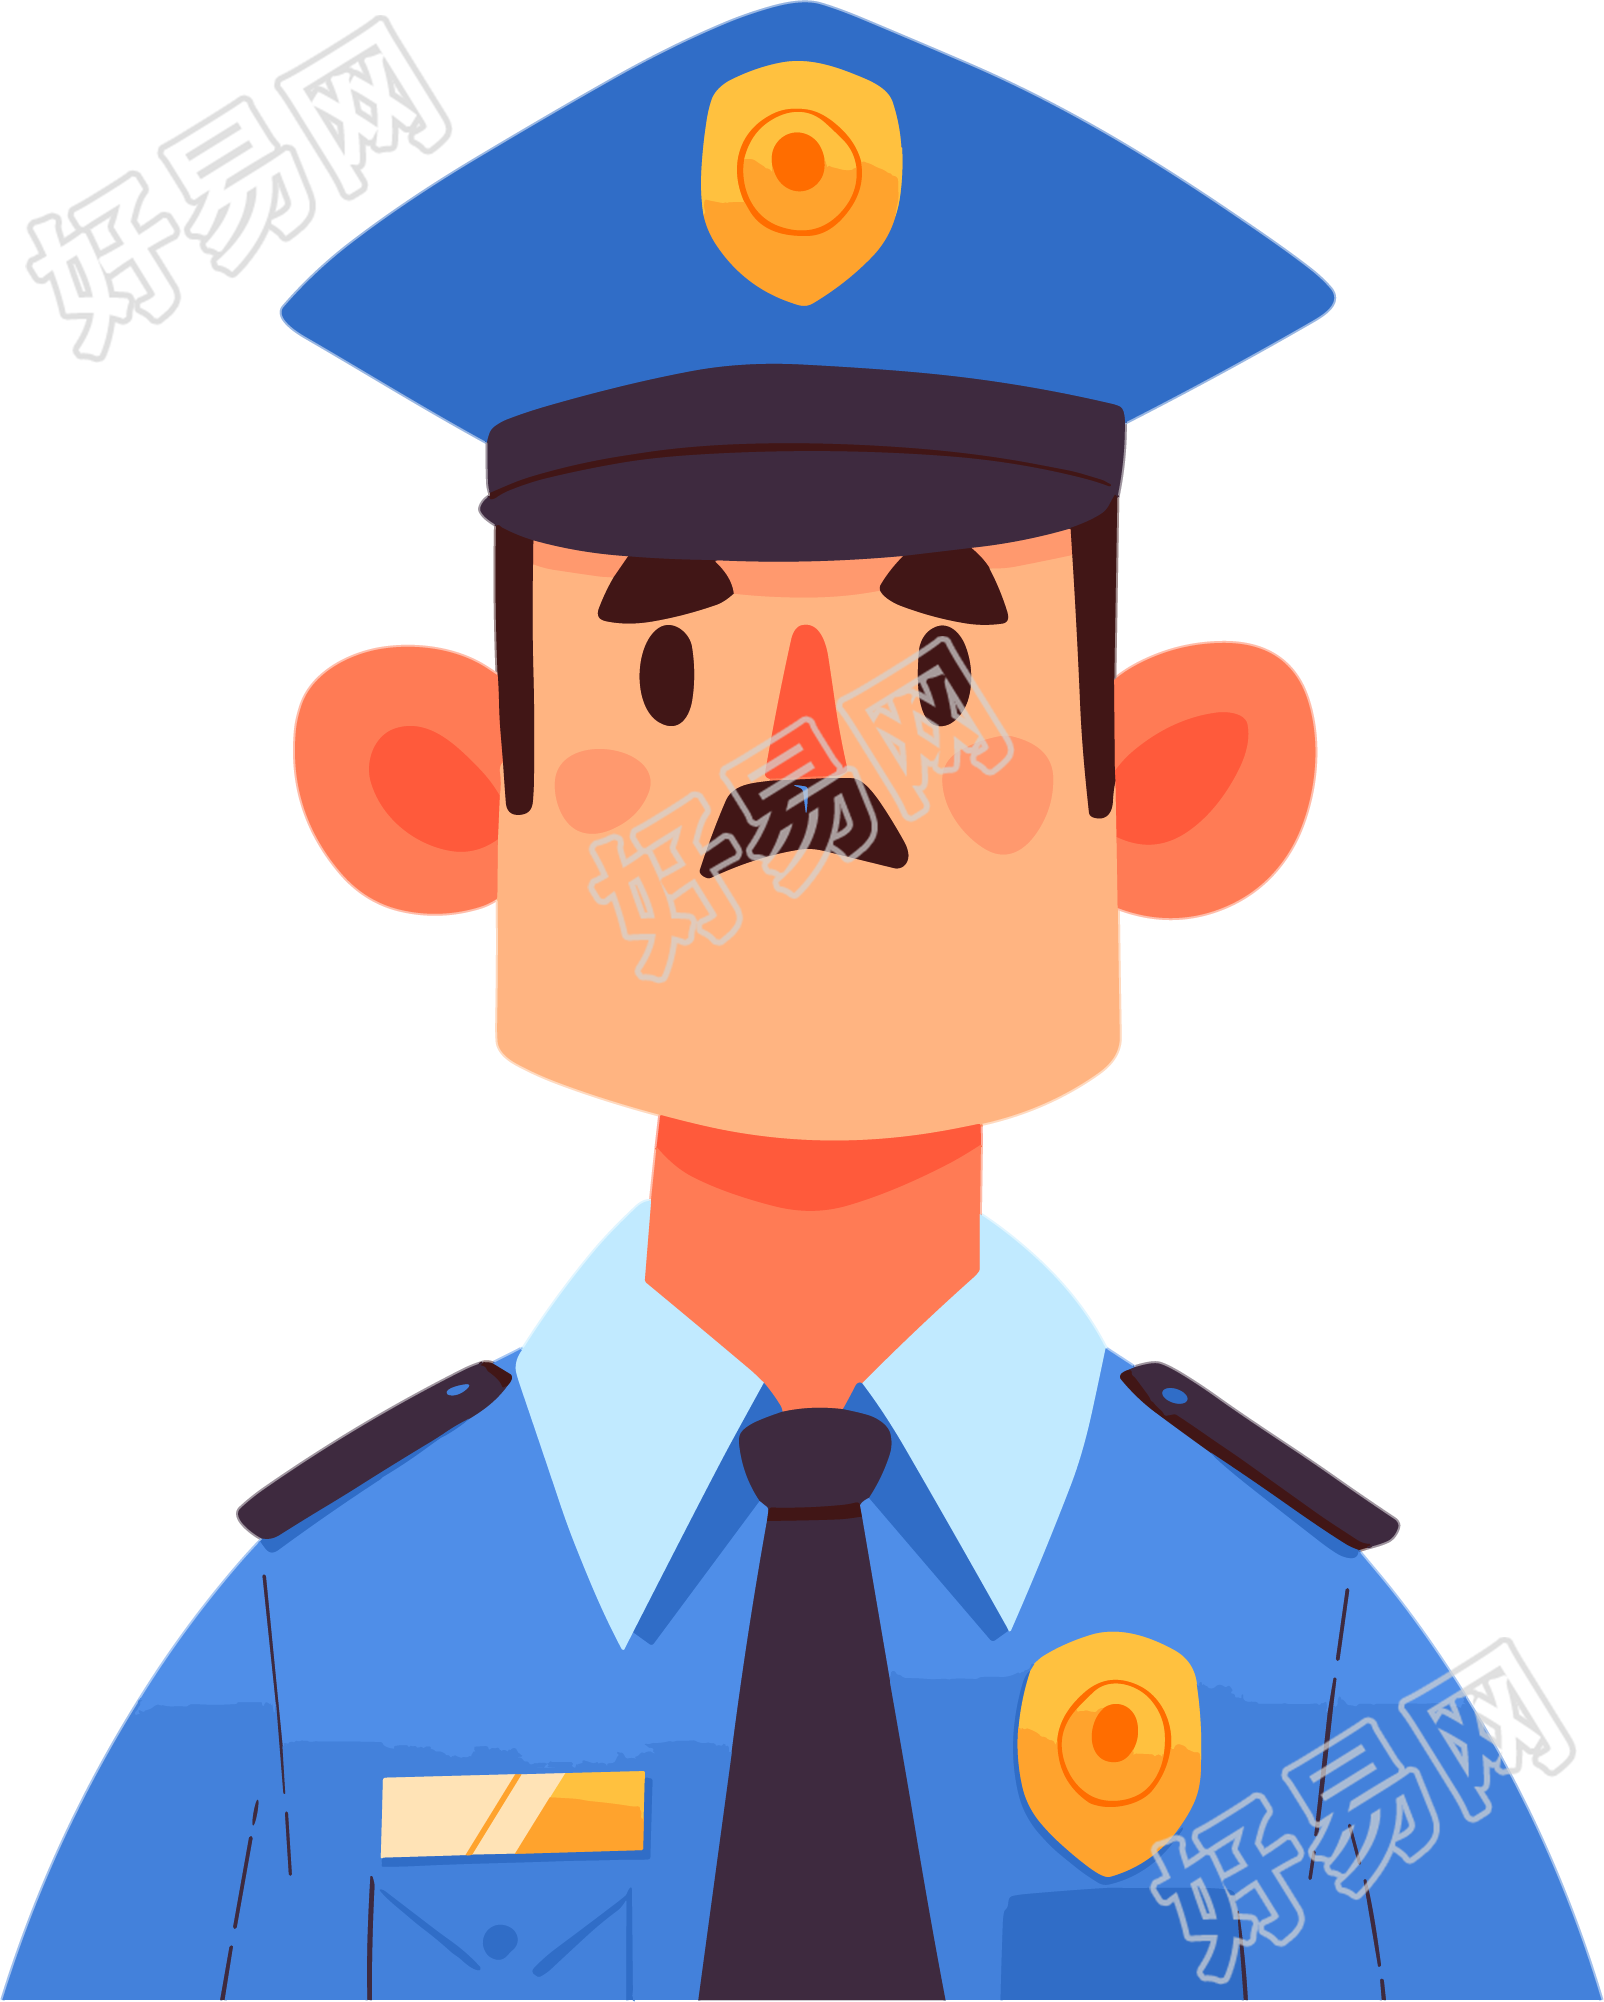 警察卡通素材